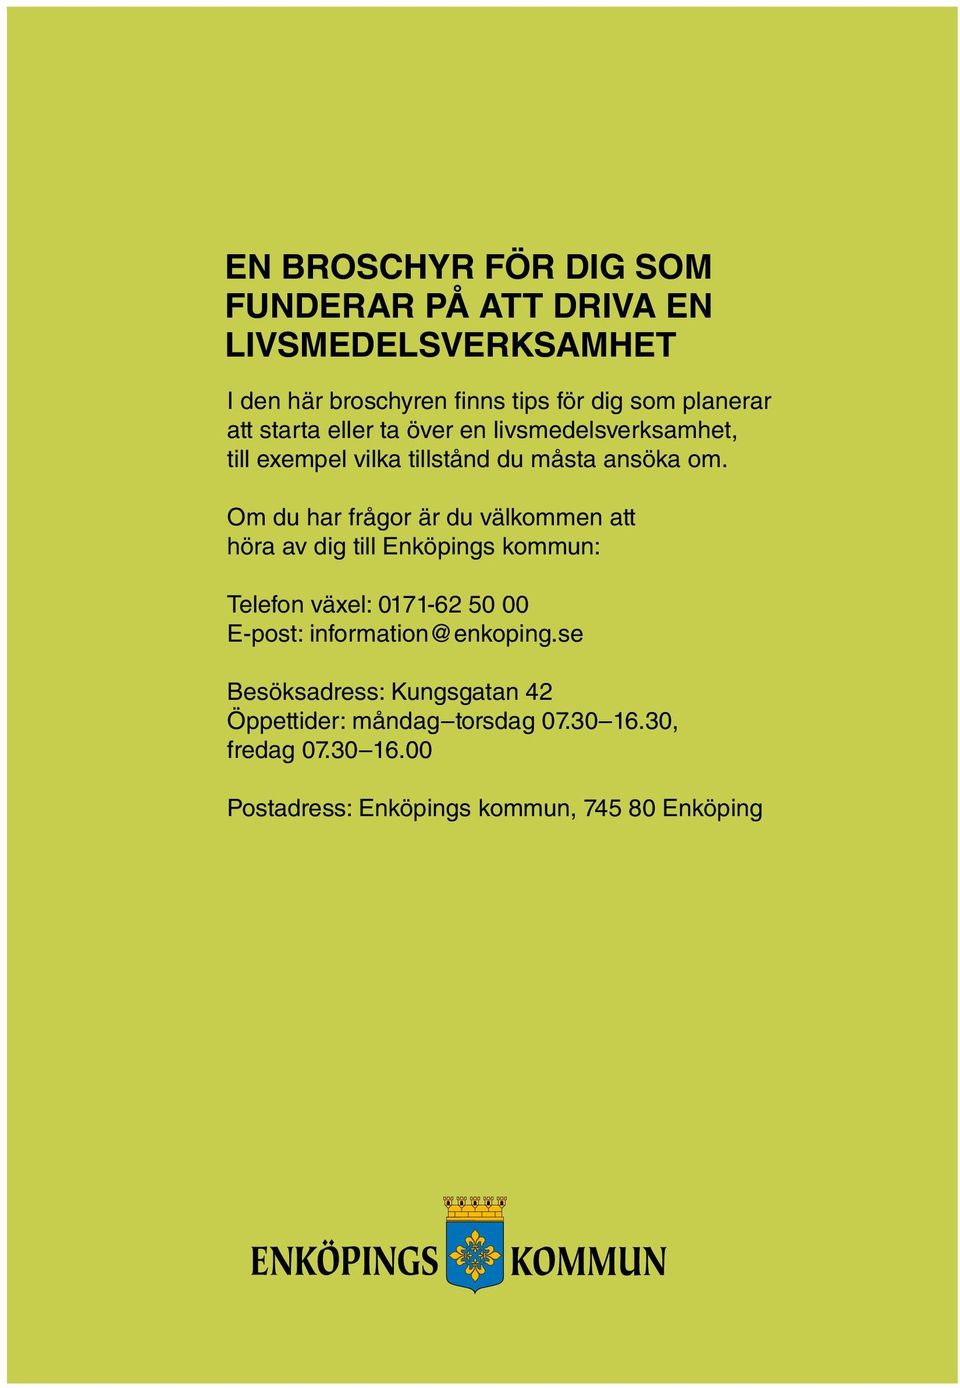 Om du har frågor är du välkommen att höra av dig till Enköpings kommun: Telefon växel: 0171-62 50 00 E-post: